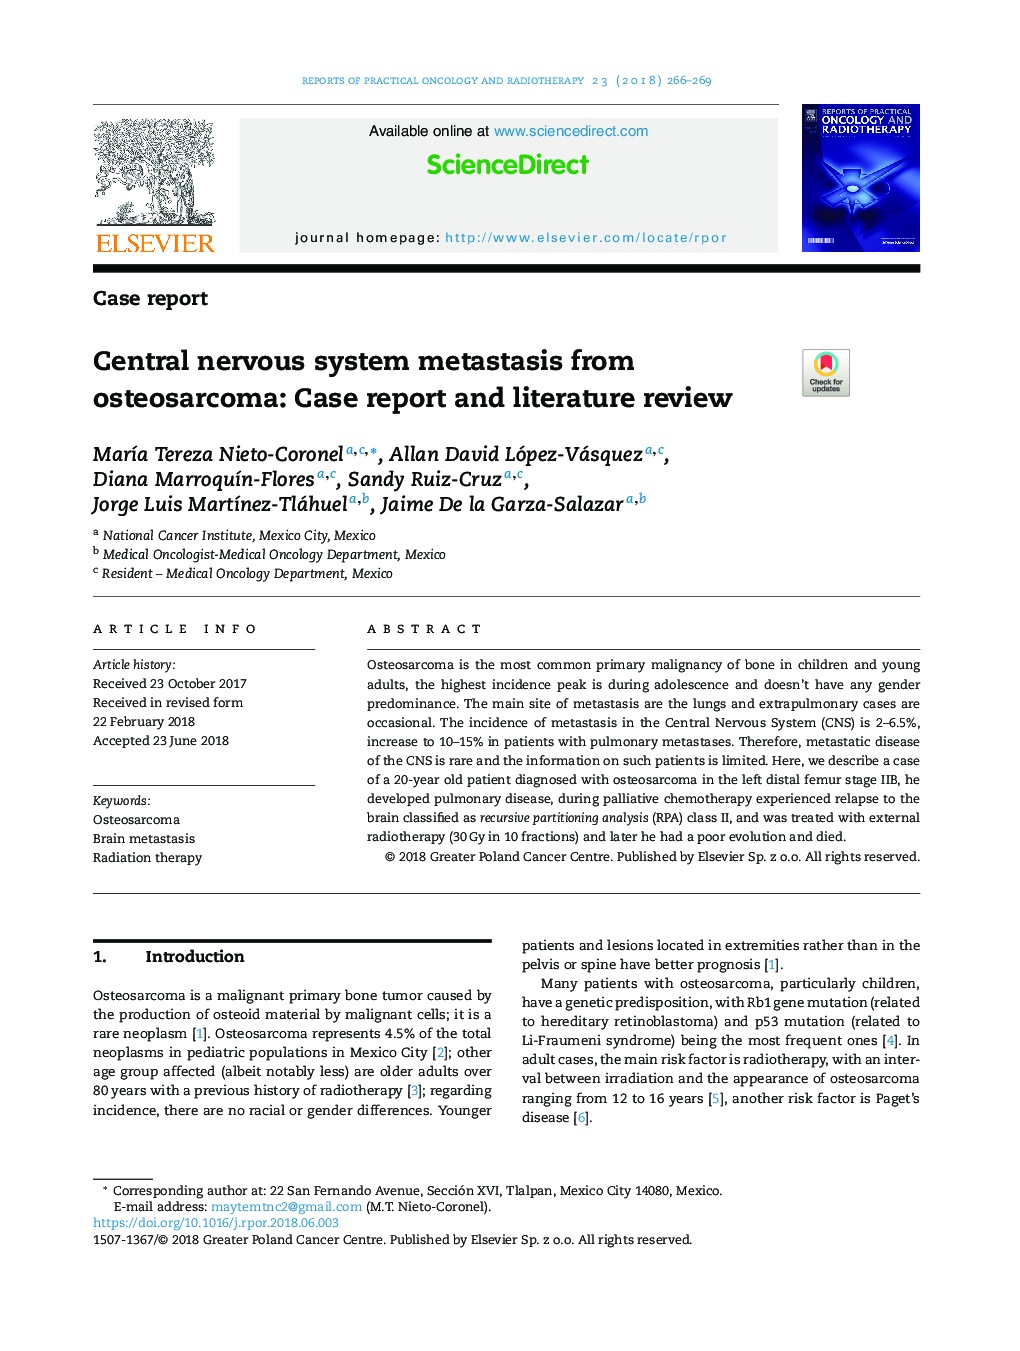 متاستاز سیستم عصبی مرکزی از استئوسارکوم: گزارش مورد و بررسی ادبیات 